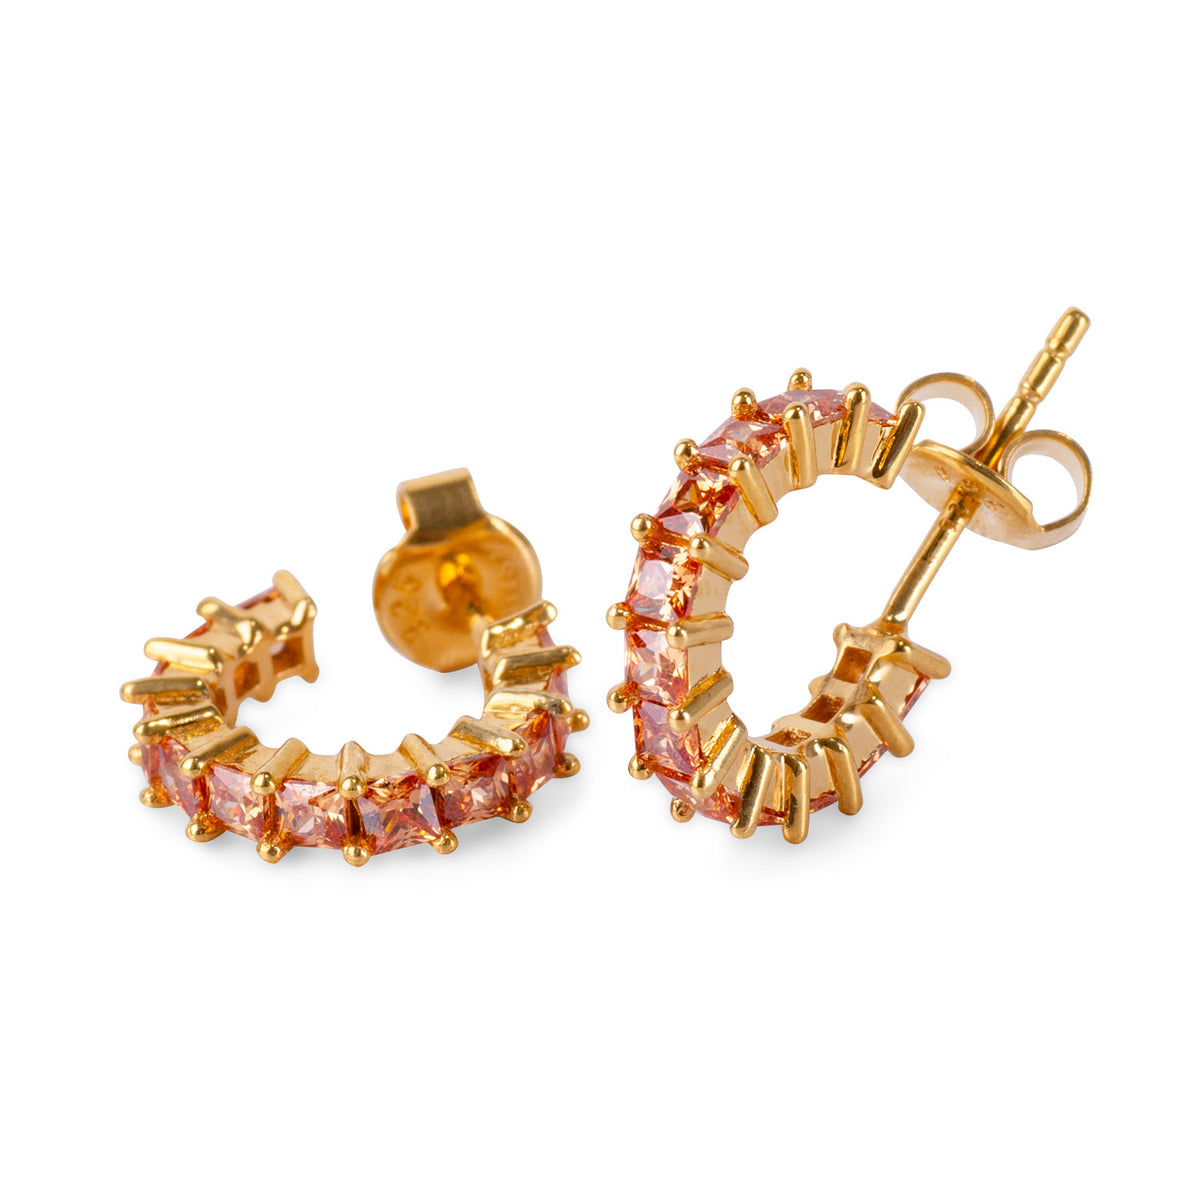 Helen Morganite 24K Gold Earrings - Gold Vermeil Earrings - Pretland | Spiritual Crystals & Jewelry